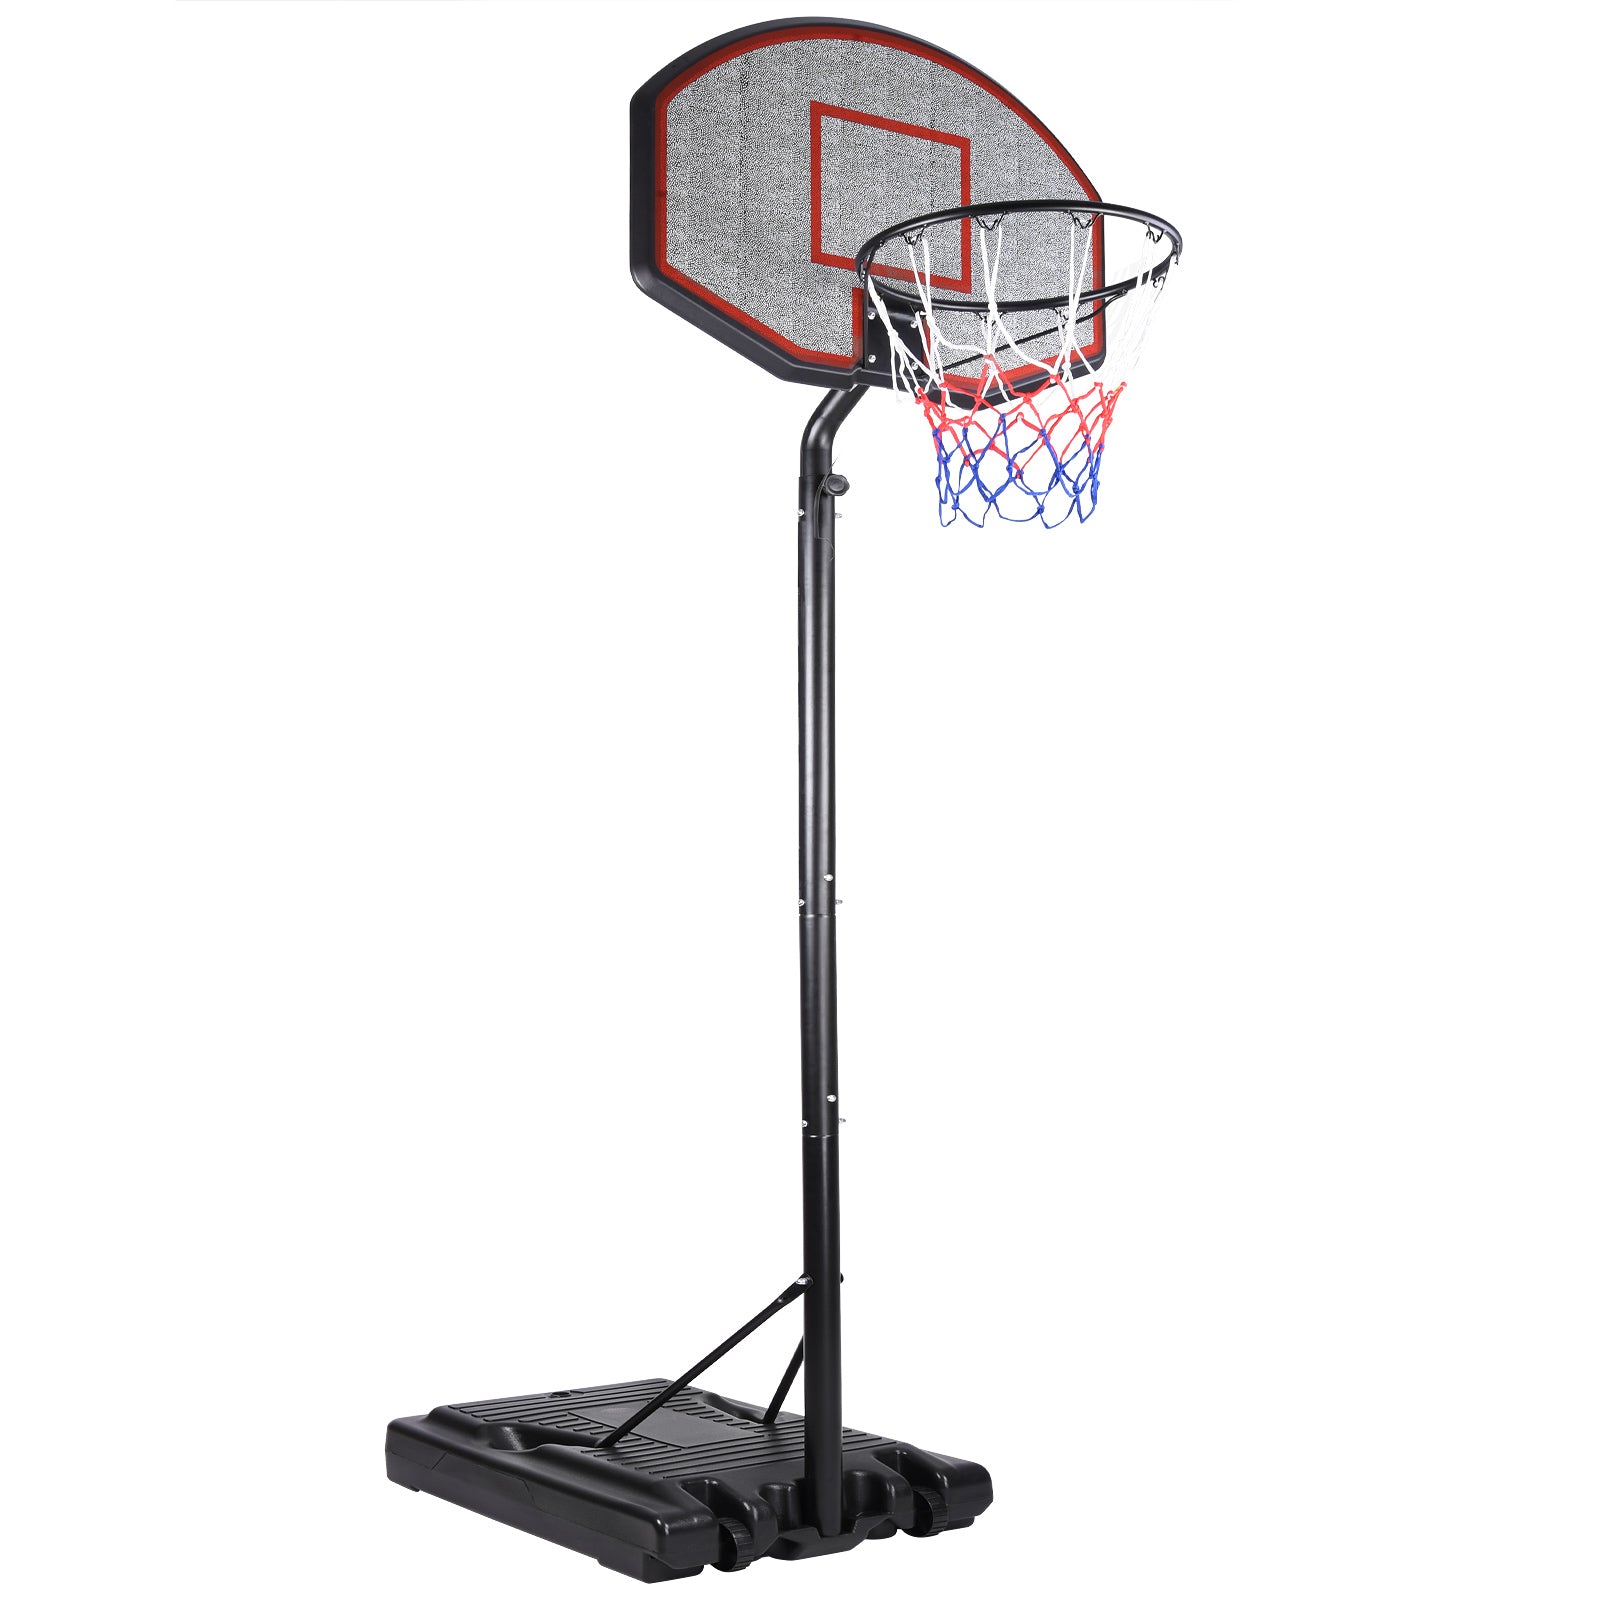 Panier de basket-ball mobile Nancy's McCordsville - Avec roues - Hauteur de l'anneau réglable - Pied enroulable